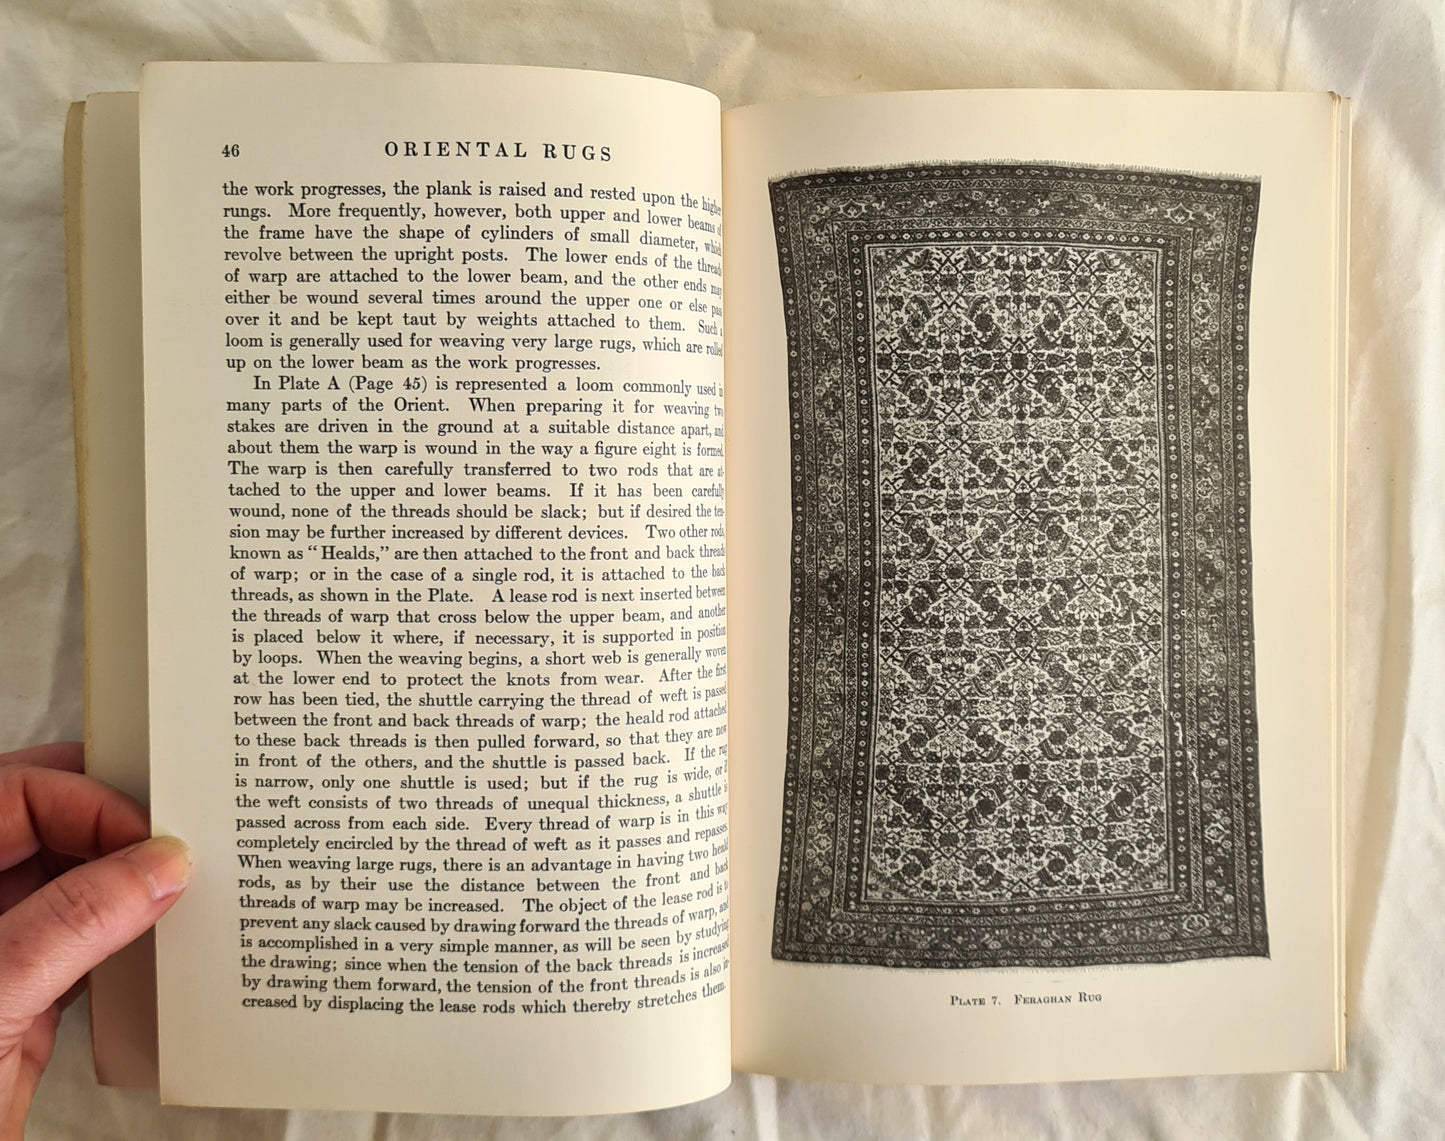 Oriental Rugs by Walter A. Hawley